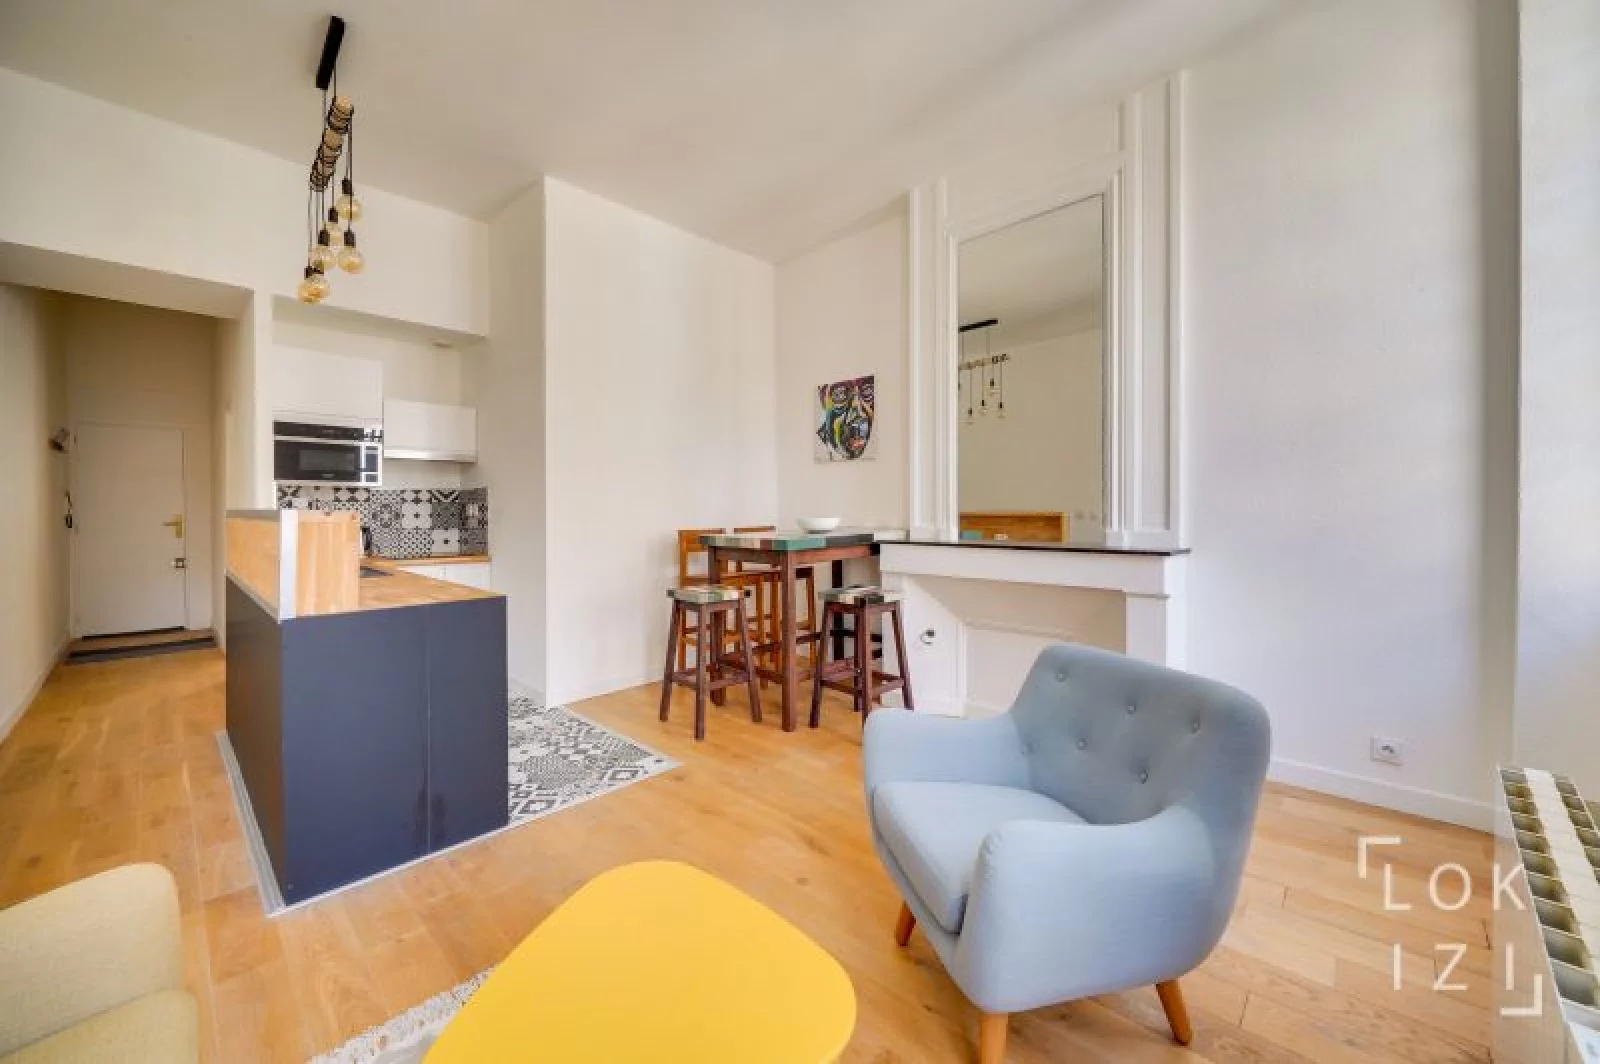 Location appartement meublé 2 pièces 37m² (Bordeaux centre - Bourse)